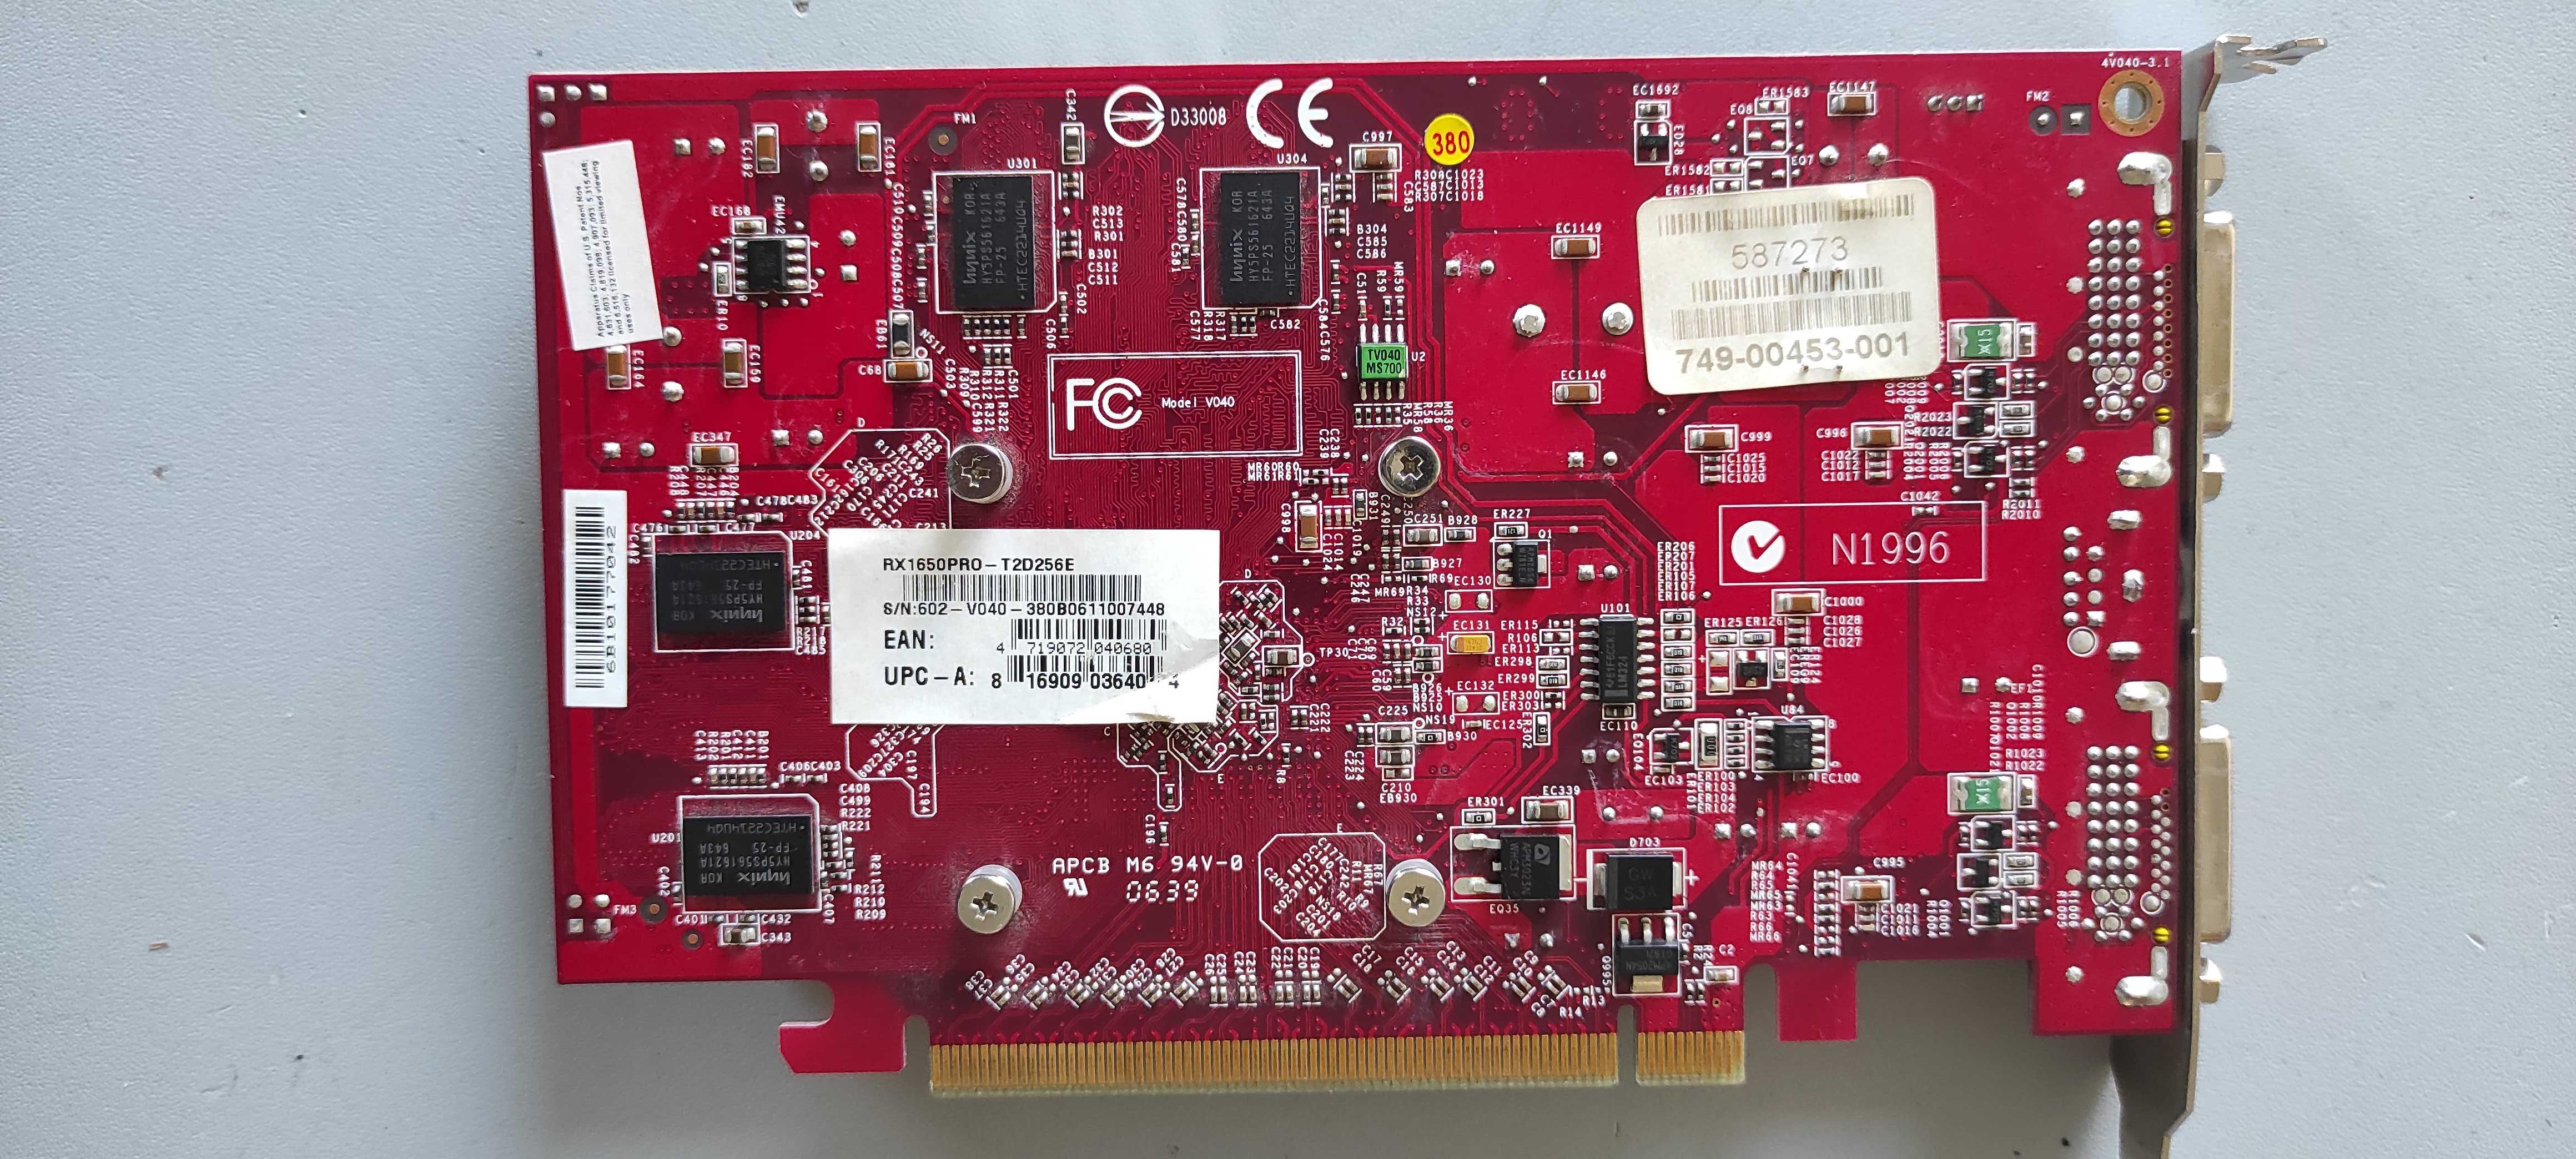 Видеокарта MSI Radeon X1650 256Mb PCI-E (DVI-I)